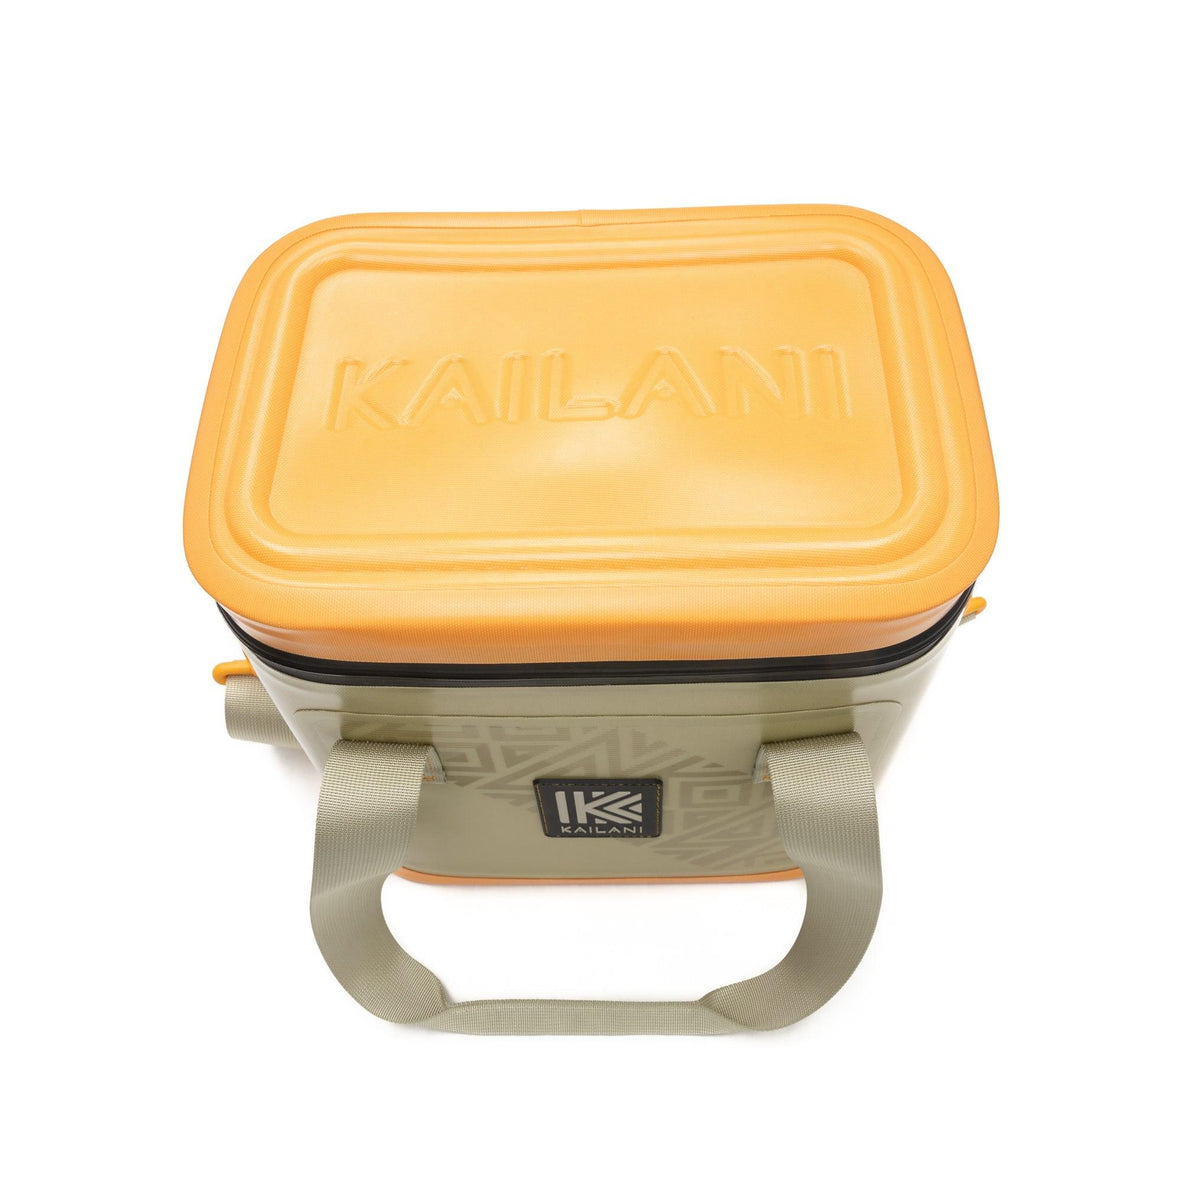 Kailani KUKUI 10 Can Soft Cooler Tan/Orange, KAILANI Sports, Canada